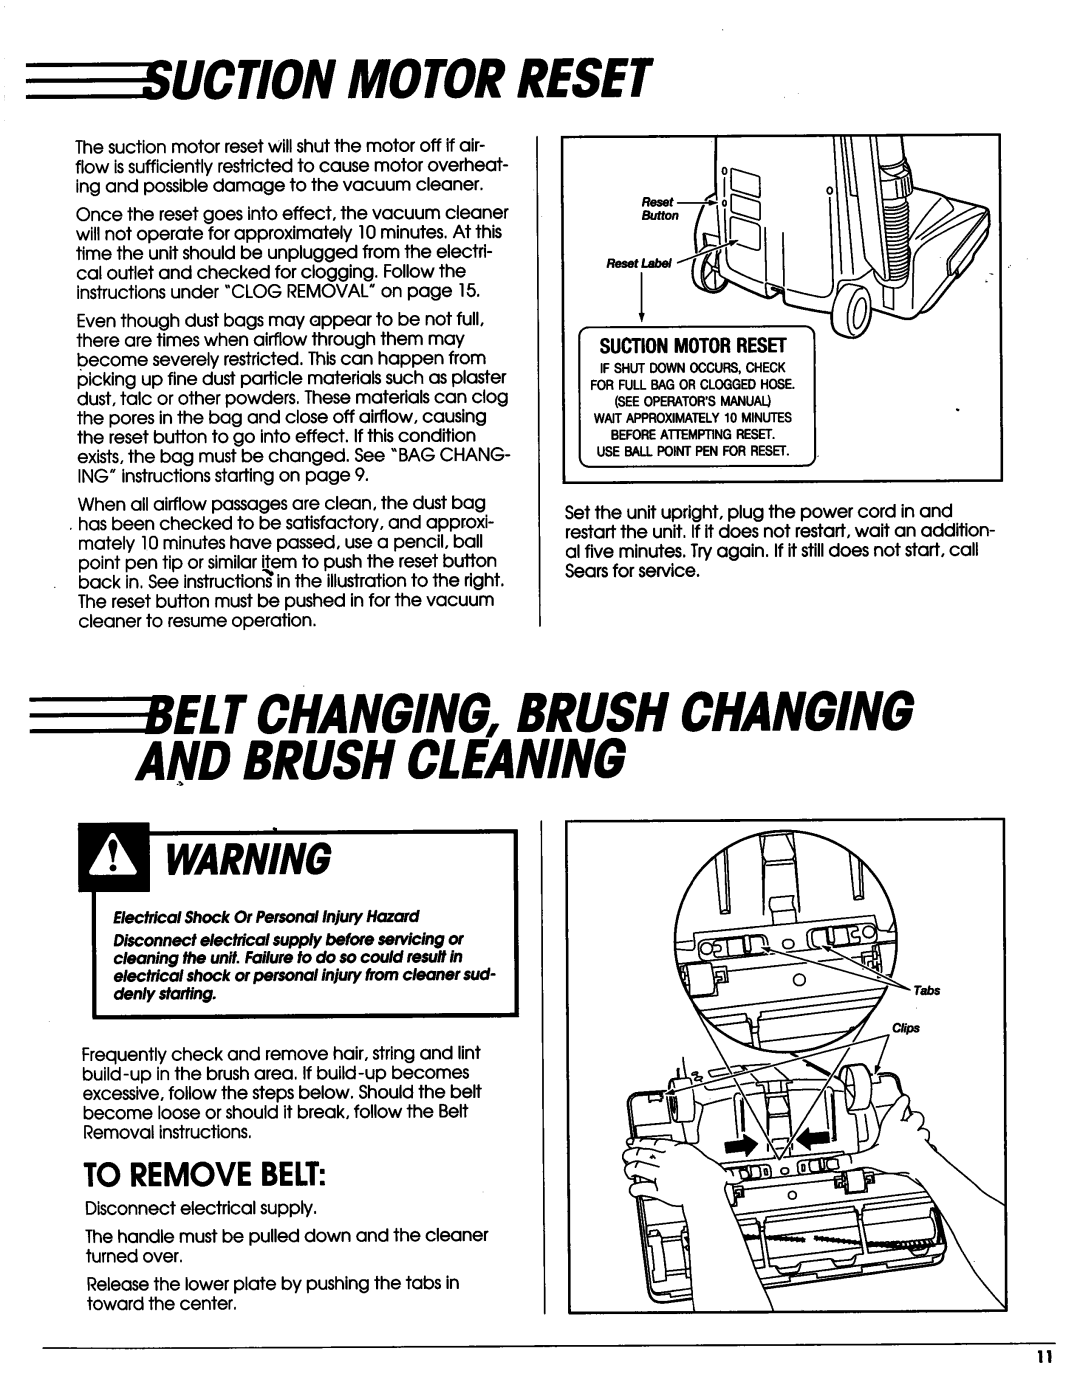 Sears Vacuum Cleaner Suction Motorreset, To Removebelt, Tchanging,Brushchanging Andbrushcleaning, Suctionmotorreset 